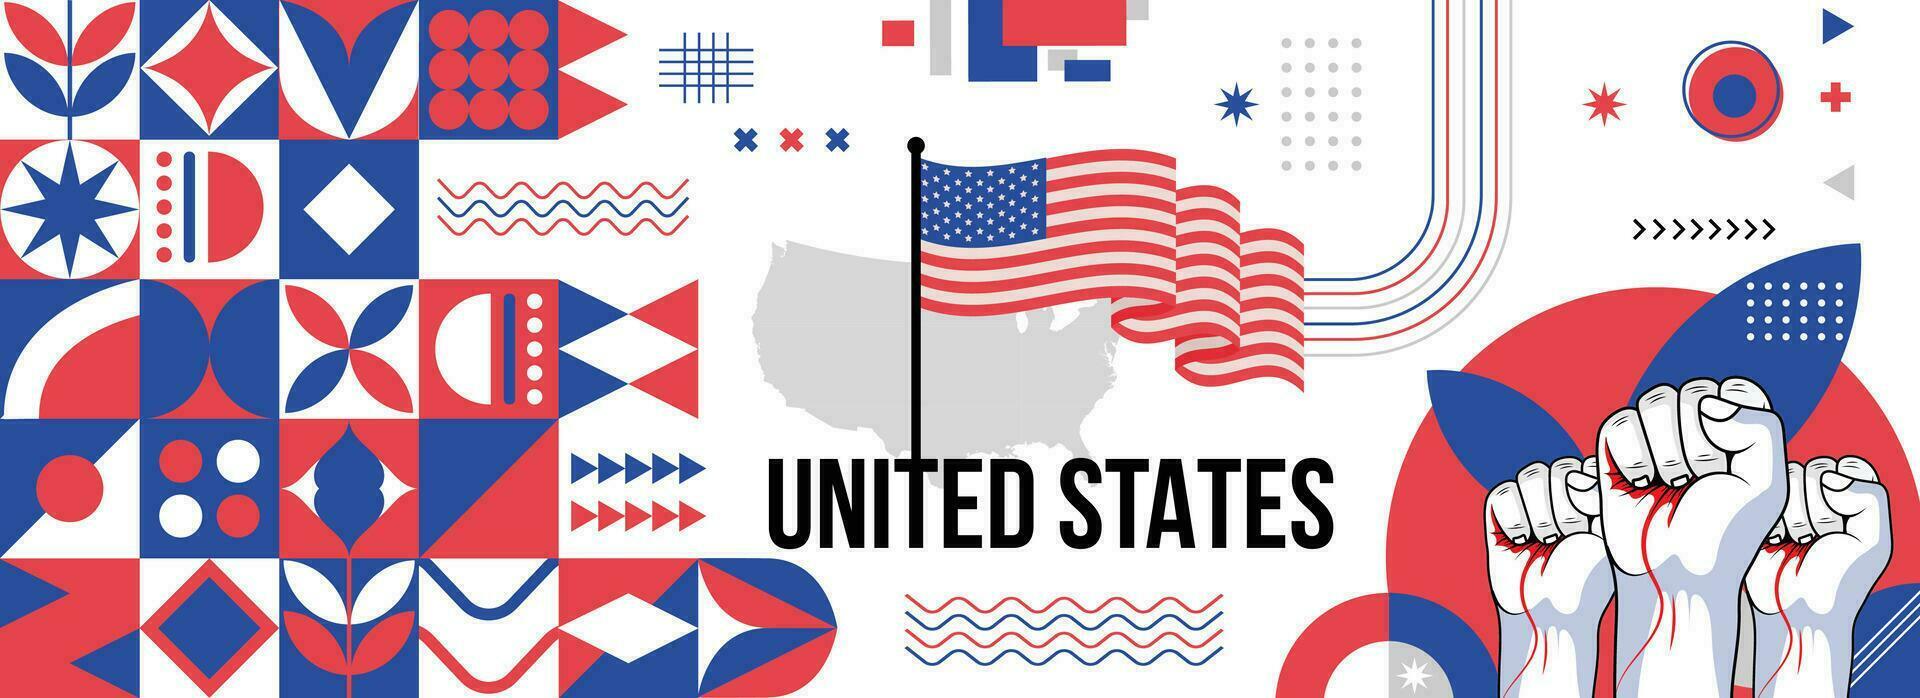 Estados Unidos nacional o independencia día bandera para país celebracion. bandera y mapa de unido estados con elevado puños moderno retro diseño con tiporgafia resumen geométrico iconos vector ilustración